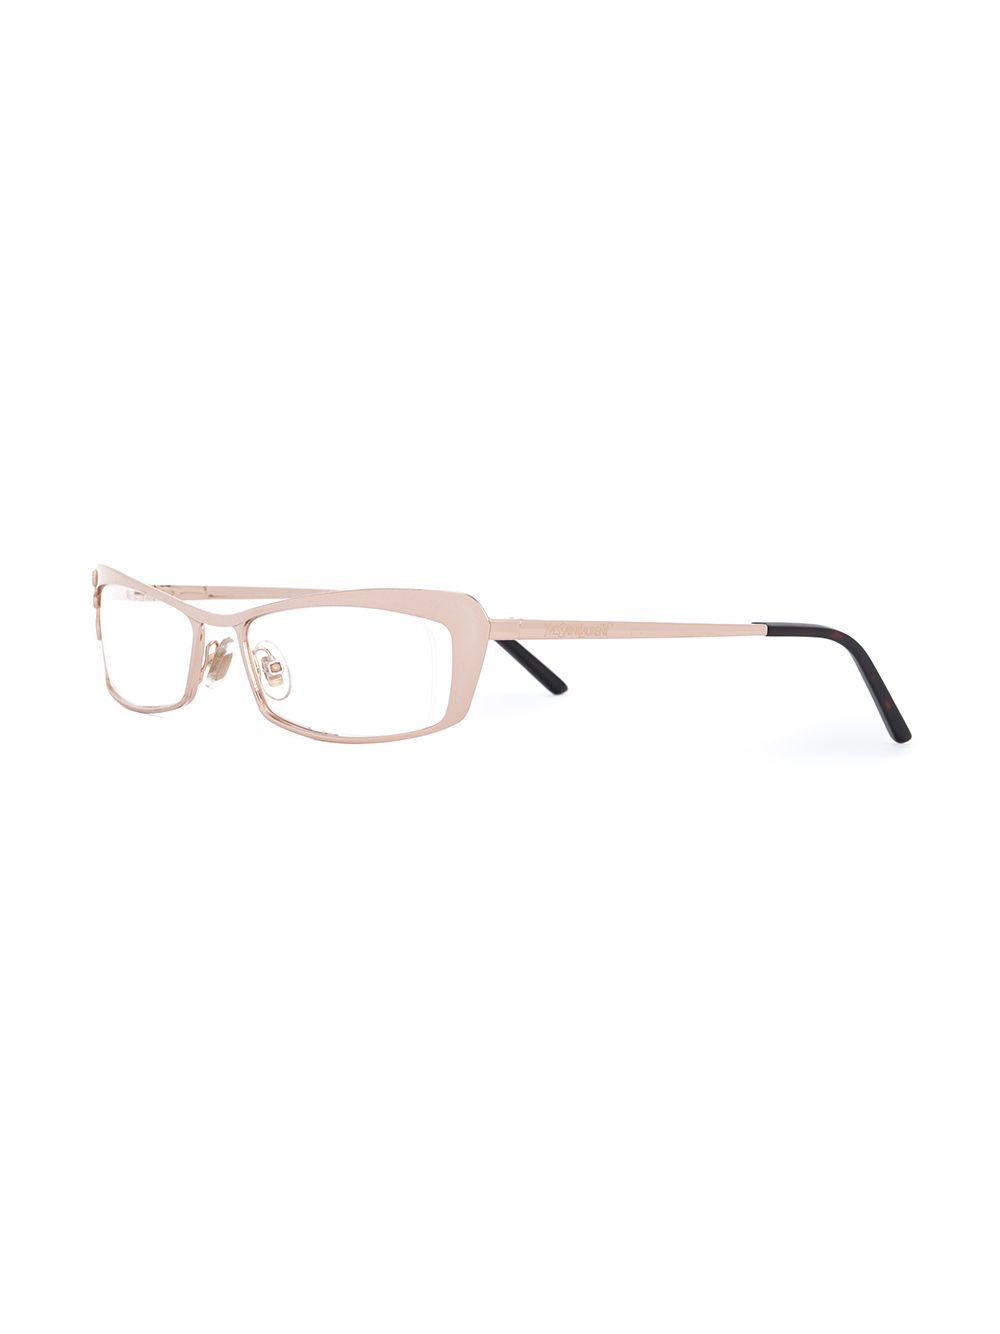 фото Yves Saint Laurent Pre-Owned декорированные очки с квадратной оправой